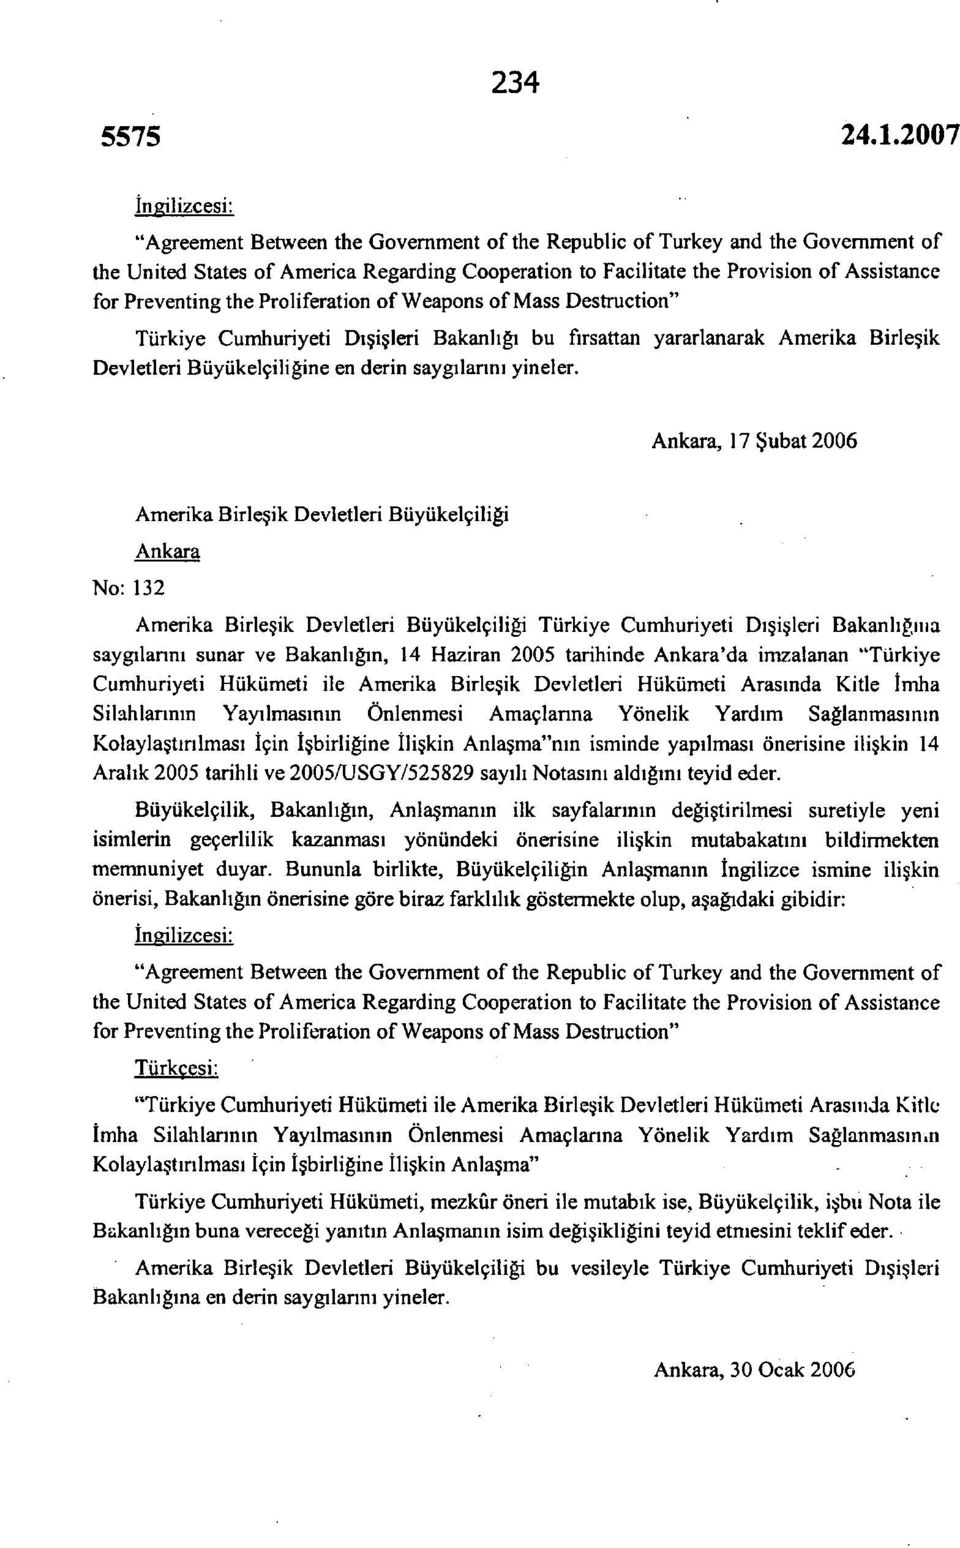 Ankara, 17 Şubat 2006 No: 132 Amerika Birleşik Devletleri Büyükelçiliği Ankara Amerika Birleşik Devletleri Büyükelçiliği Türkiye Cumhuriyeti Dışişleri Bakanlığına saygılarını sunar ve Bakanlığın, 14